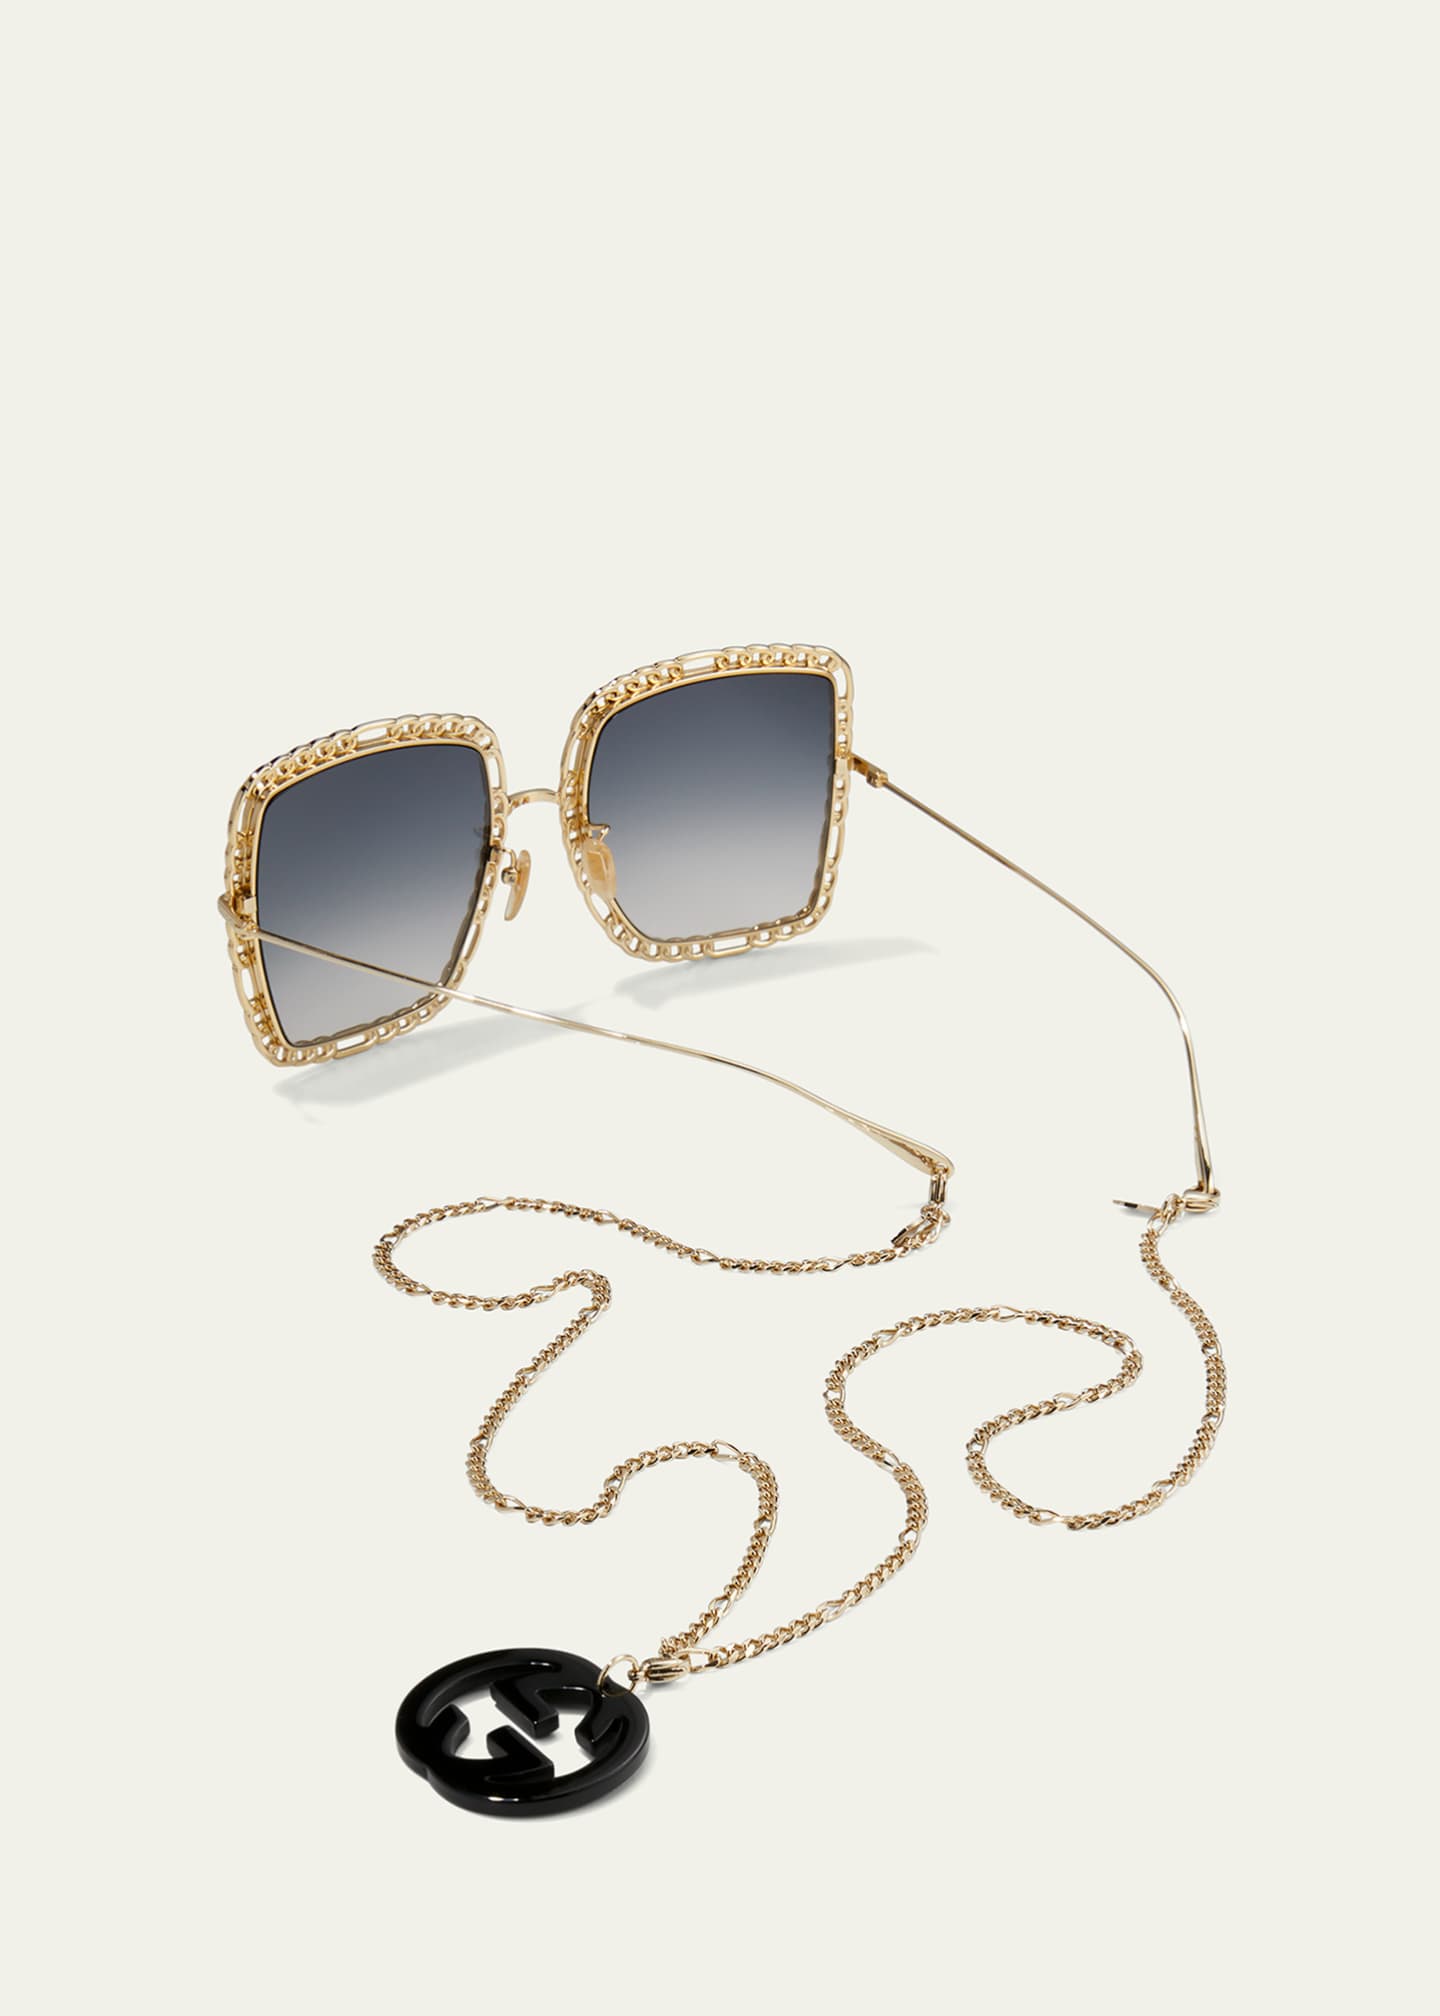 Gucci Square Metal Sunglasses w/ Chain Strap - Bergdorf Goodman